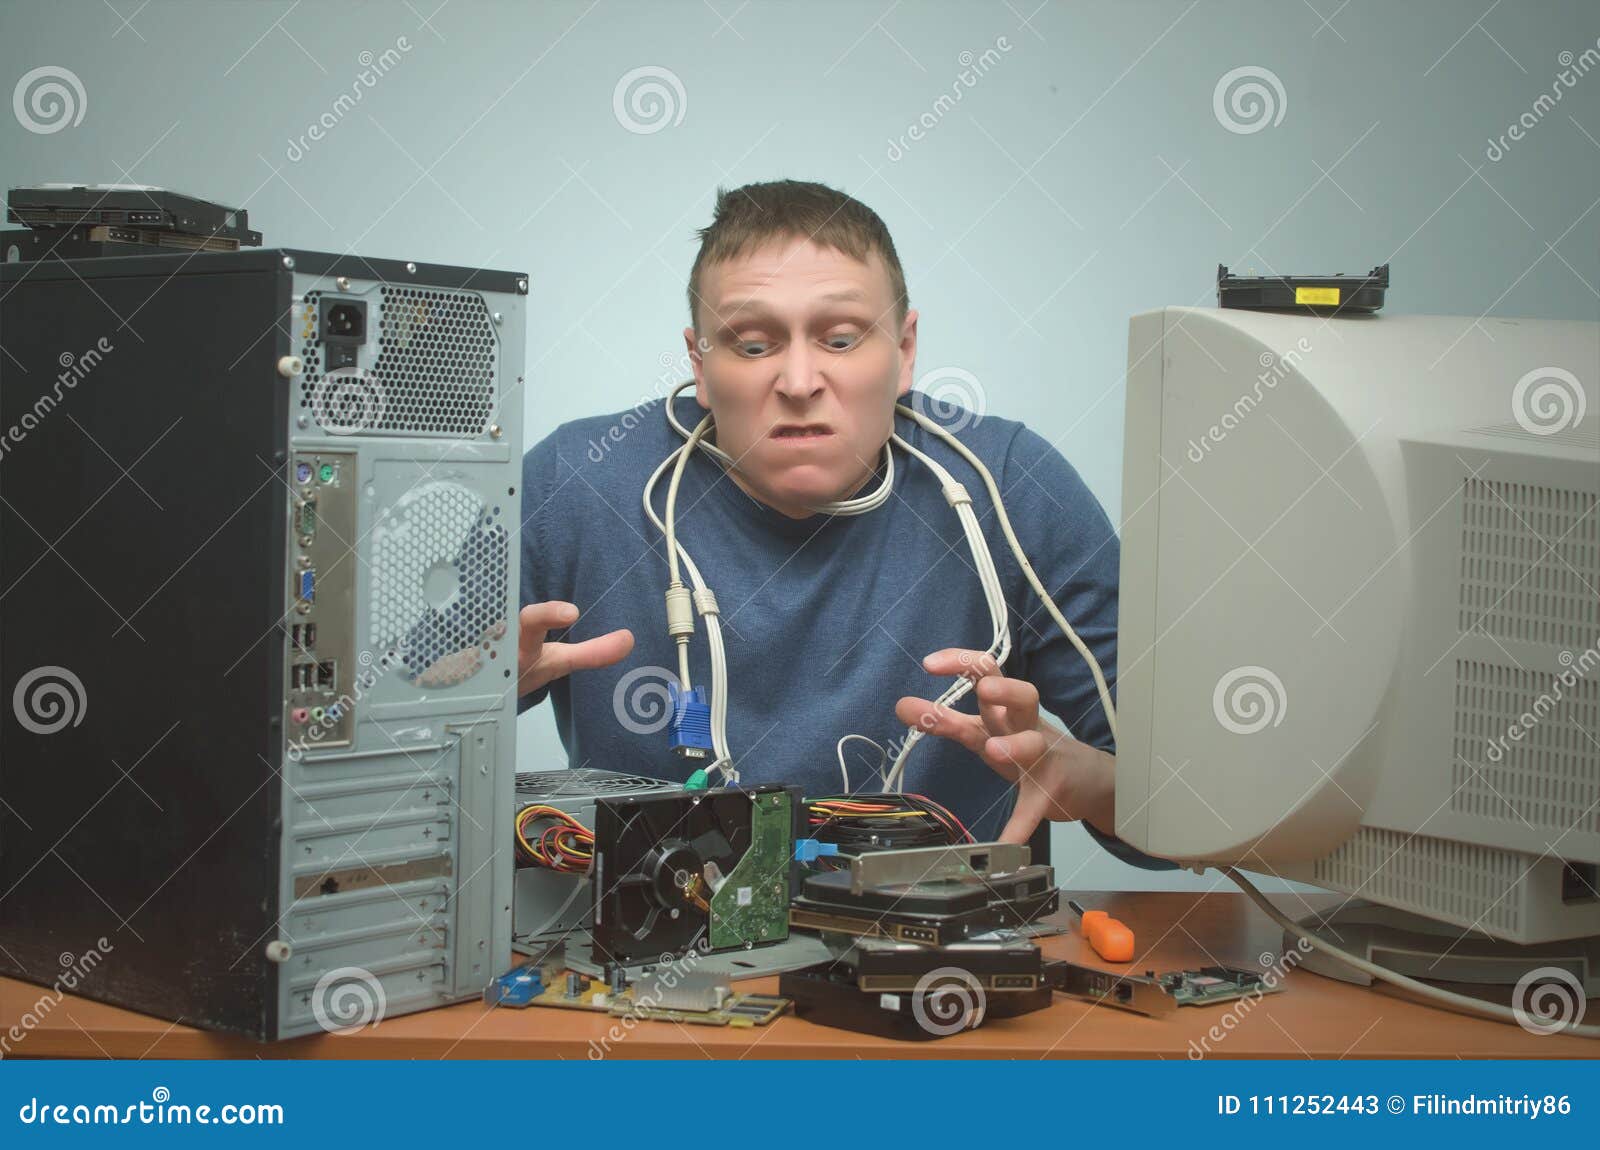 Computer repair technician jobs uk